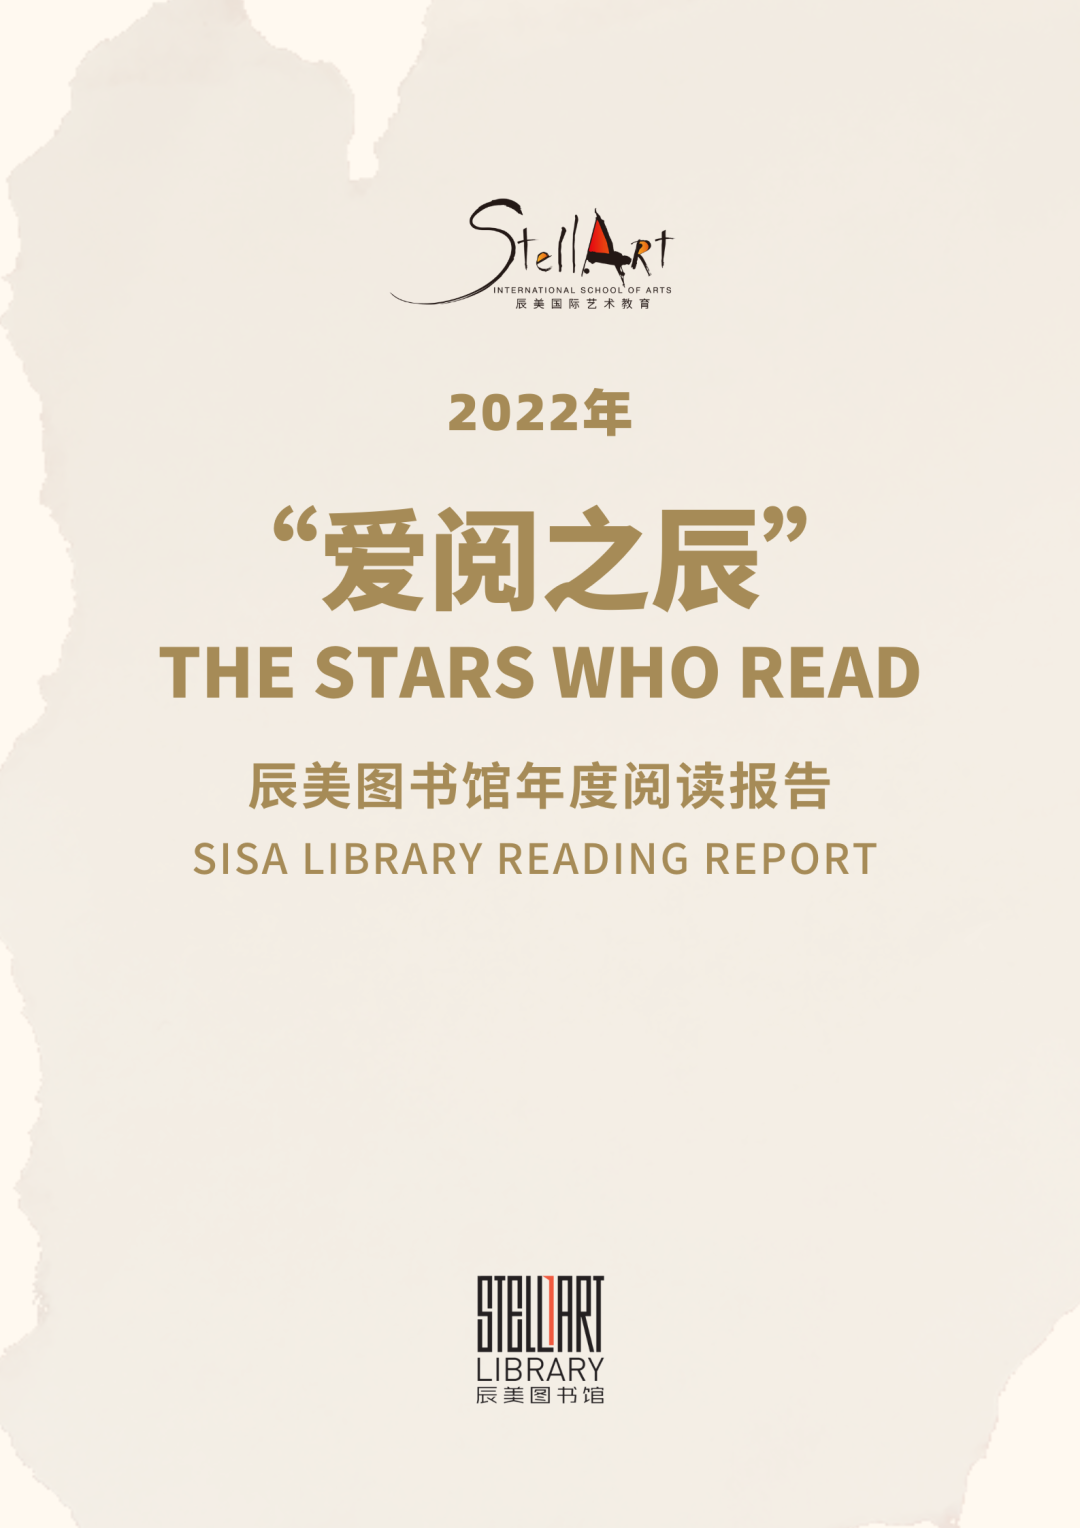 阅读报告 | 辰美图书馆哪类书最受欢迎？2022年度阅读报告来了！